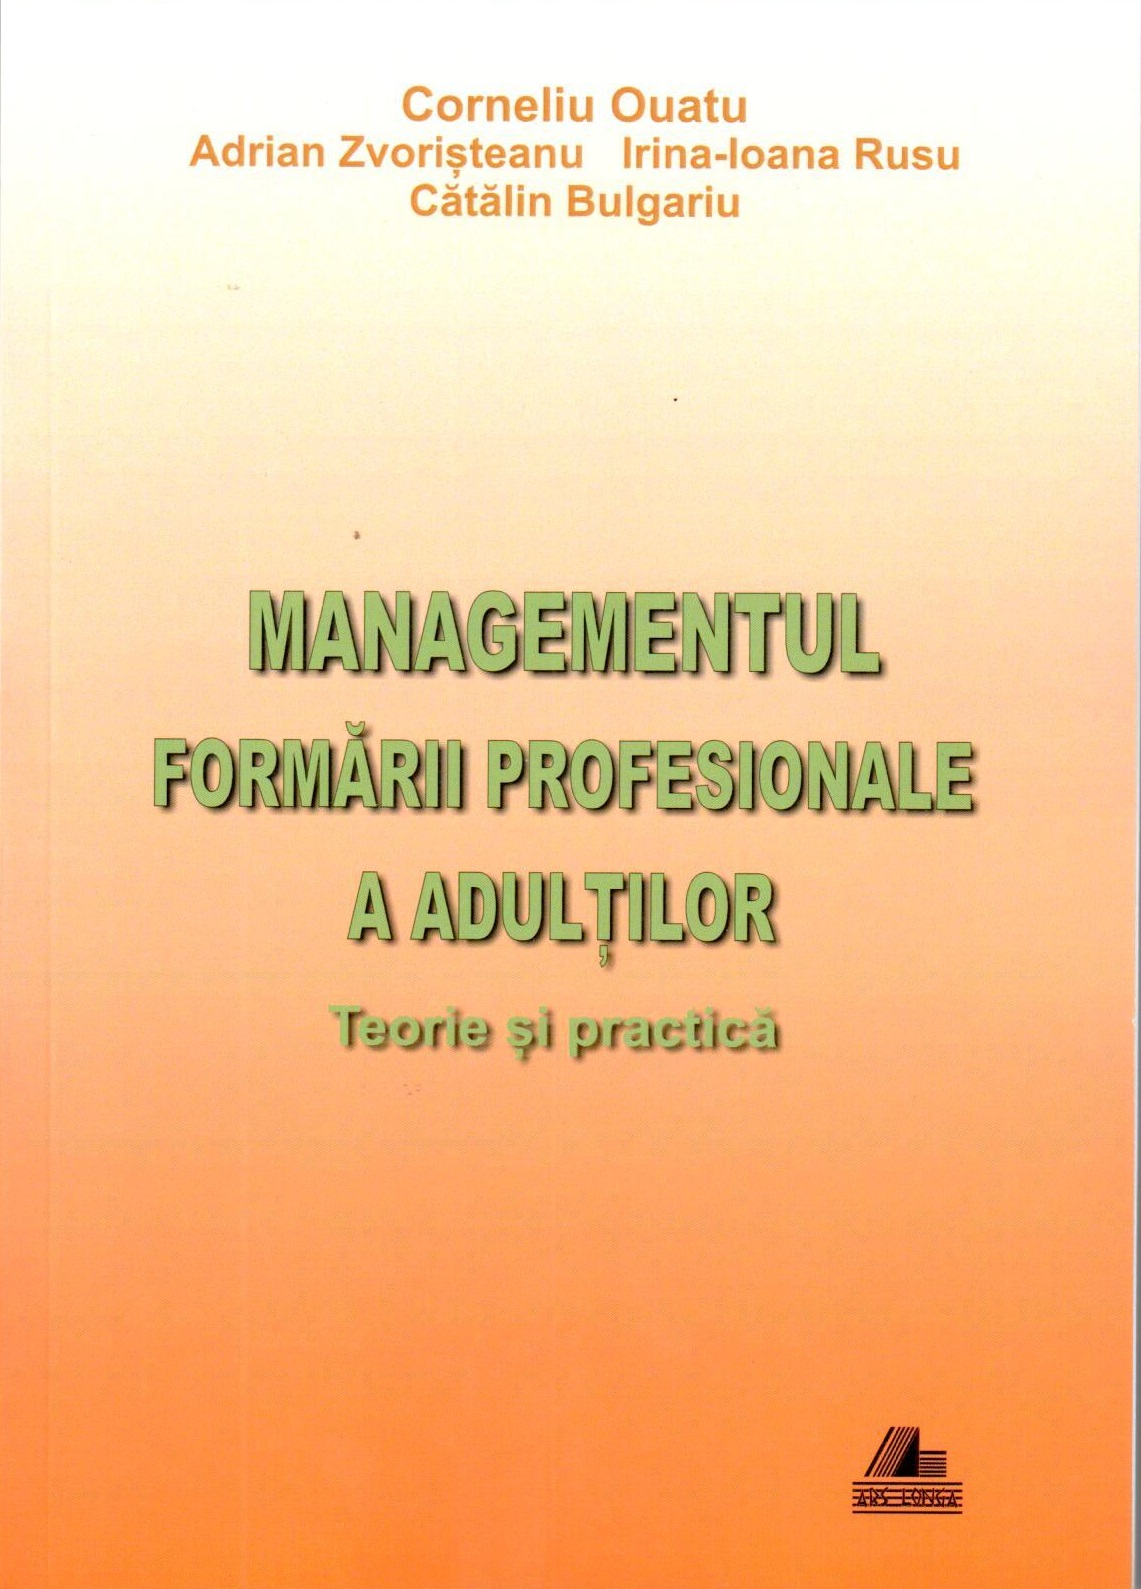 PDF Managementul formarii profesionale a adultilor | Corneliu Ouatu, Adrian Zvoristeanu, Irina-Ioana Rusu Ars Longa Business si economie